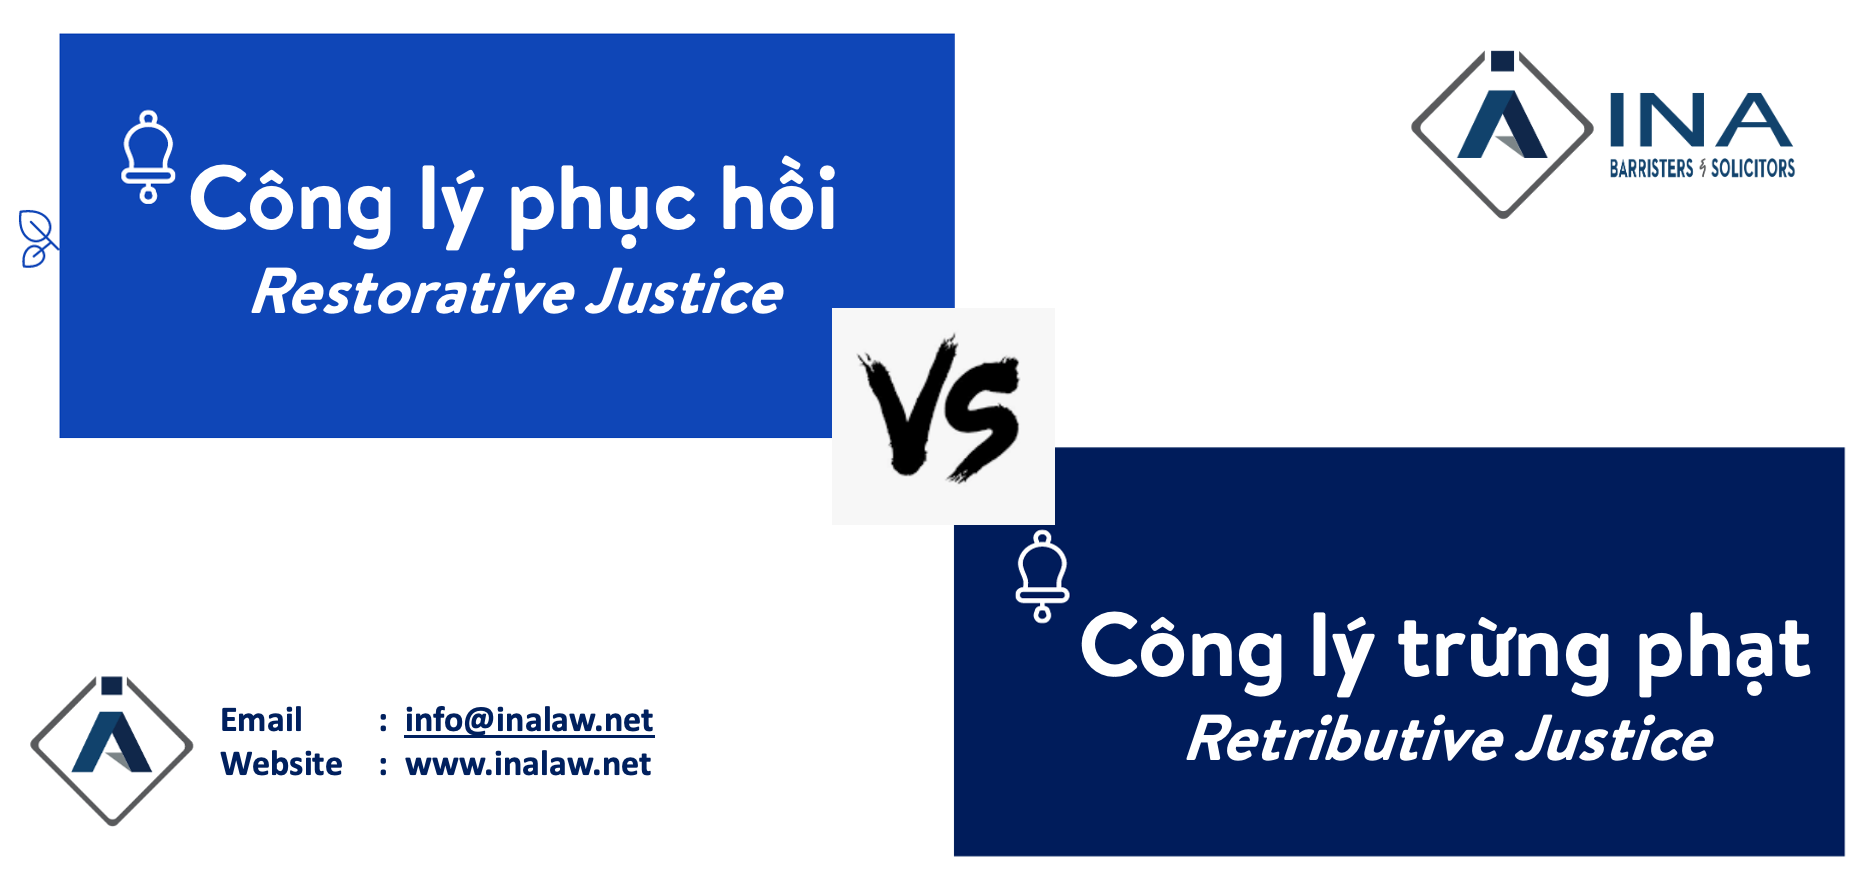 Restorative justice & Retributive justice